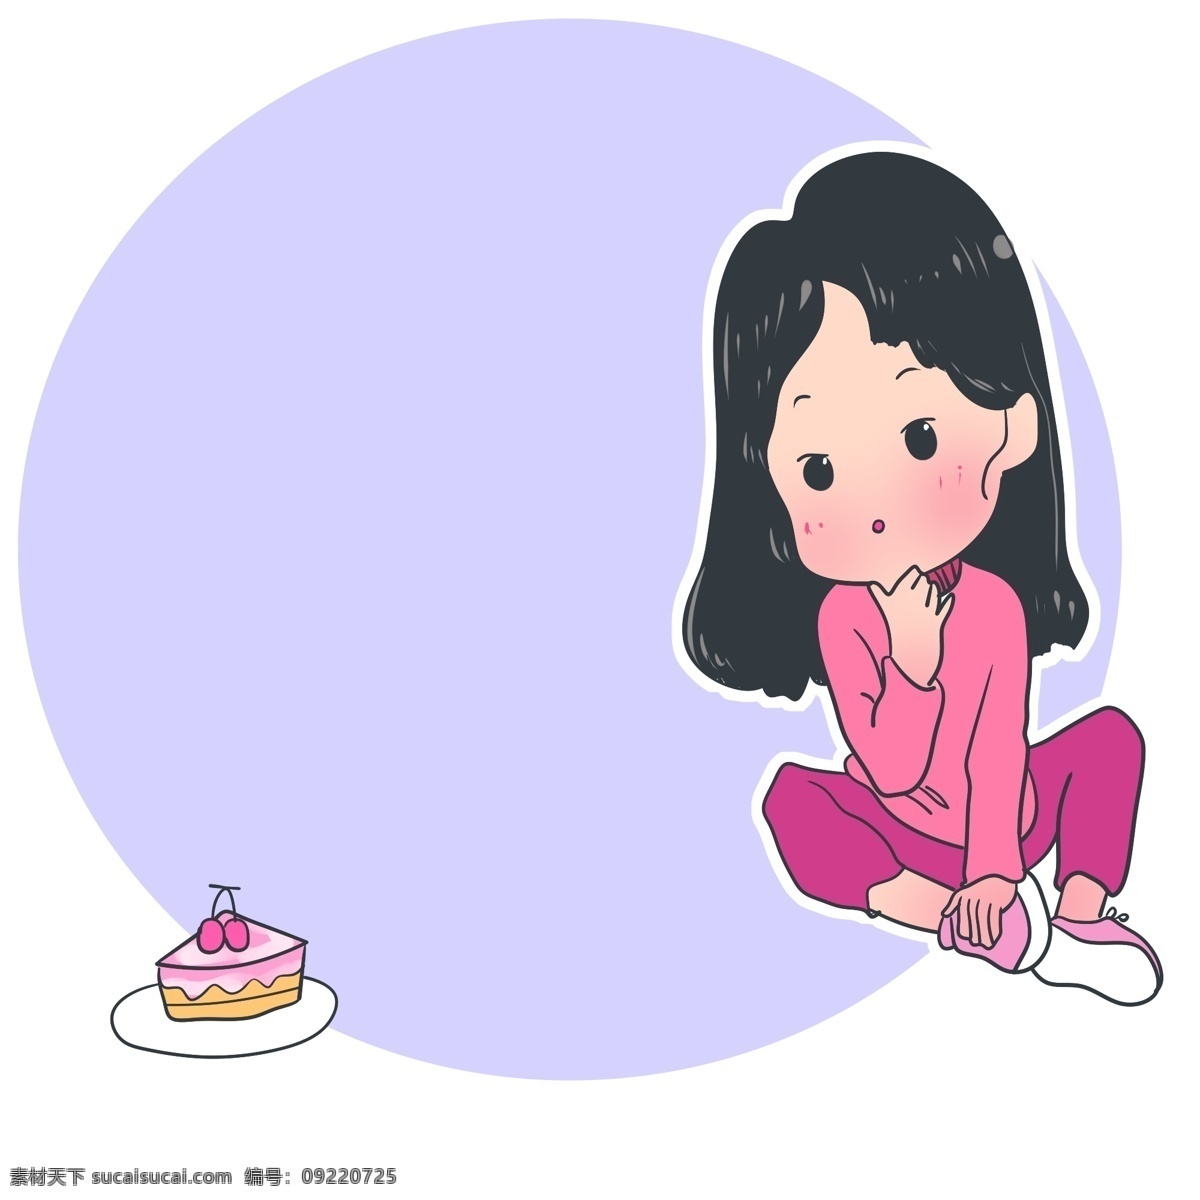 可爱 女孩 蛋糕 边框 小 装饰 可爱女孩边框 紫色圆形边框 小女孩边框 卡通小人 樱桃小蛋糕